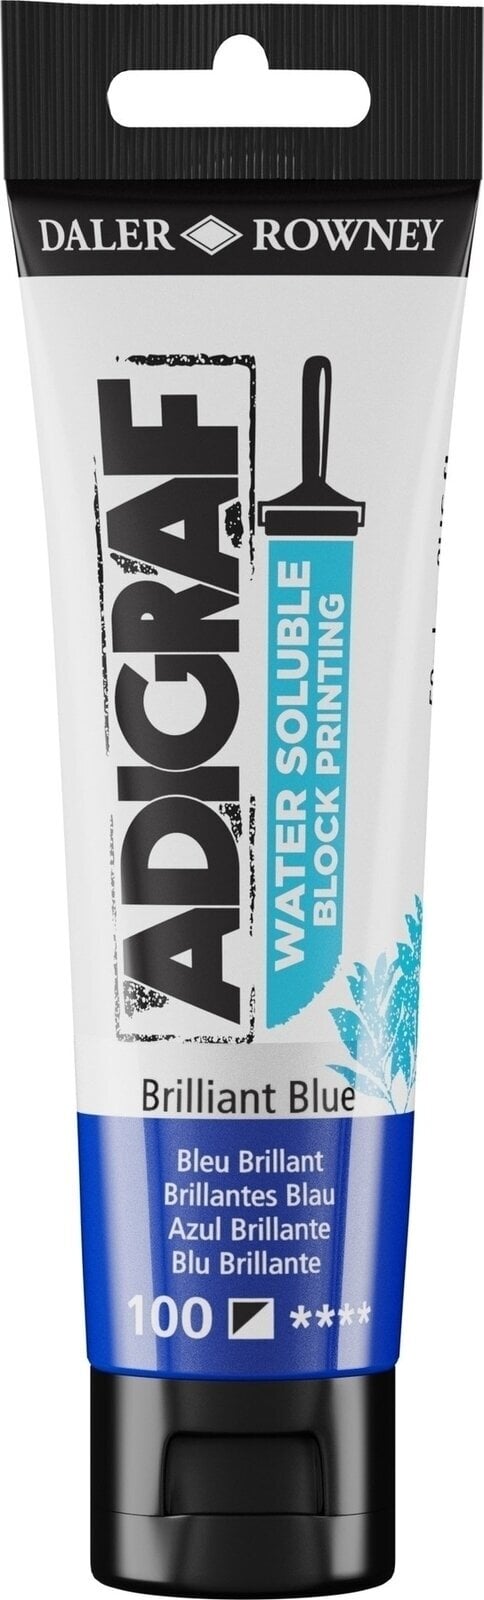 Boja za linorez Daler Rowney Adigraf Block Printing Water Soluble Colour Boja za linorez Brilliant Blue 59 ml